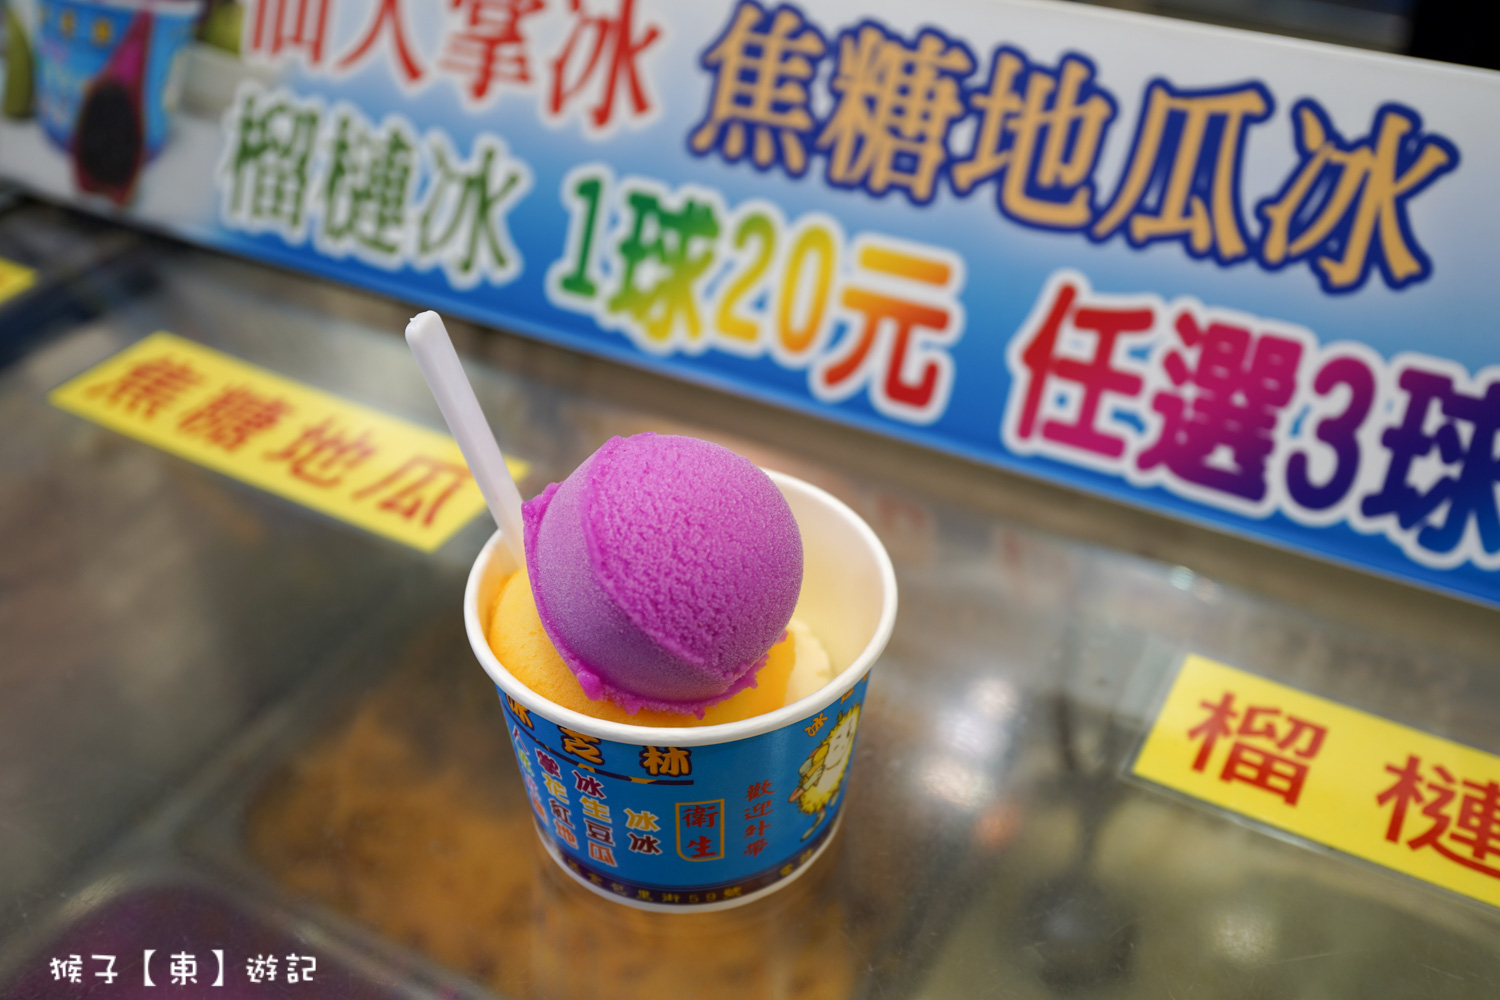 網站近期文章：[新北] 金山冰芝林 金山老街必吃冰淇淋 3球40元 店家自製仙人掌冰 榴槤冰 焦糖地瓜冰好好吃